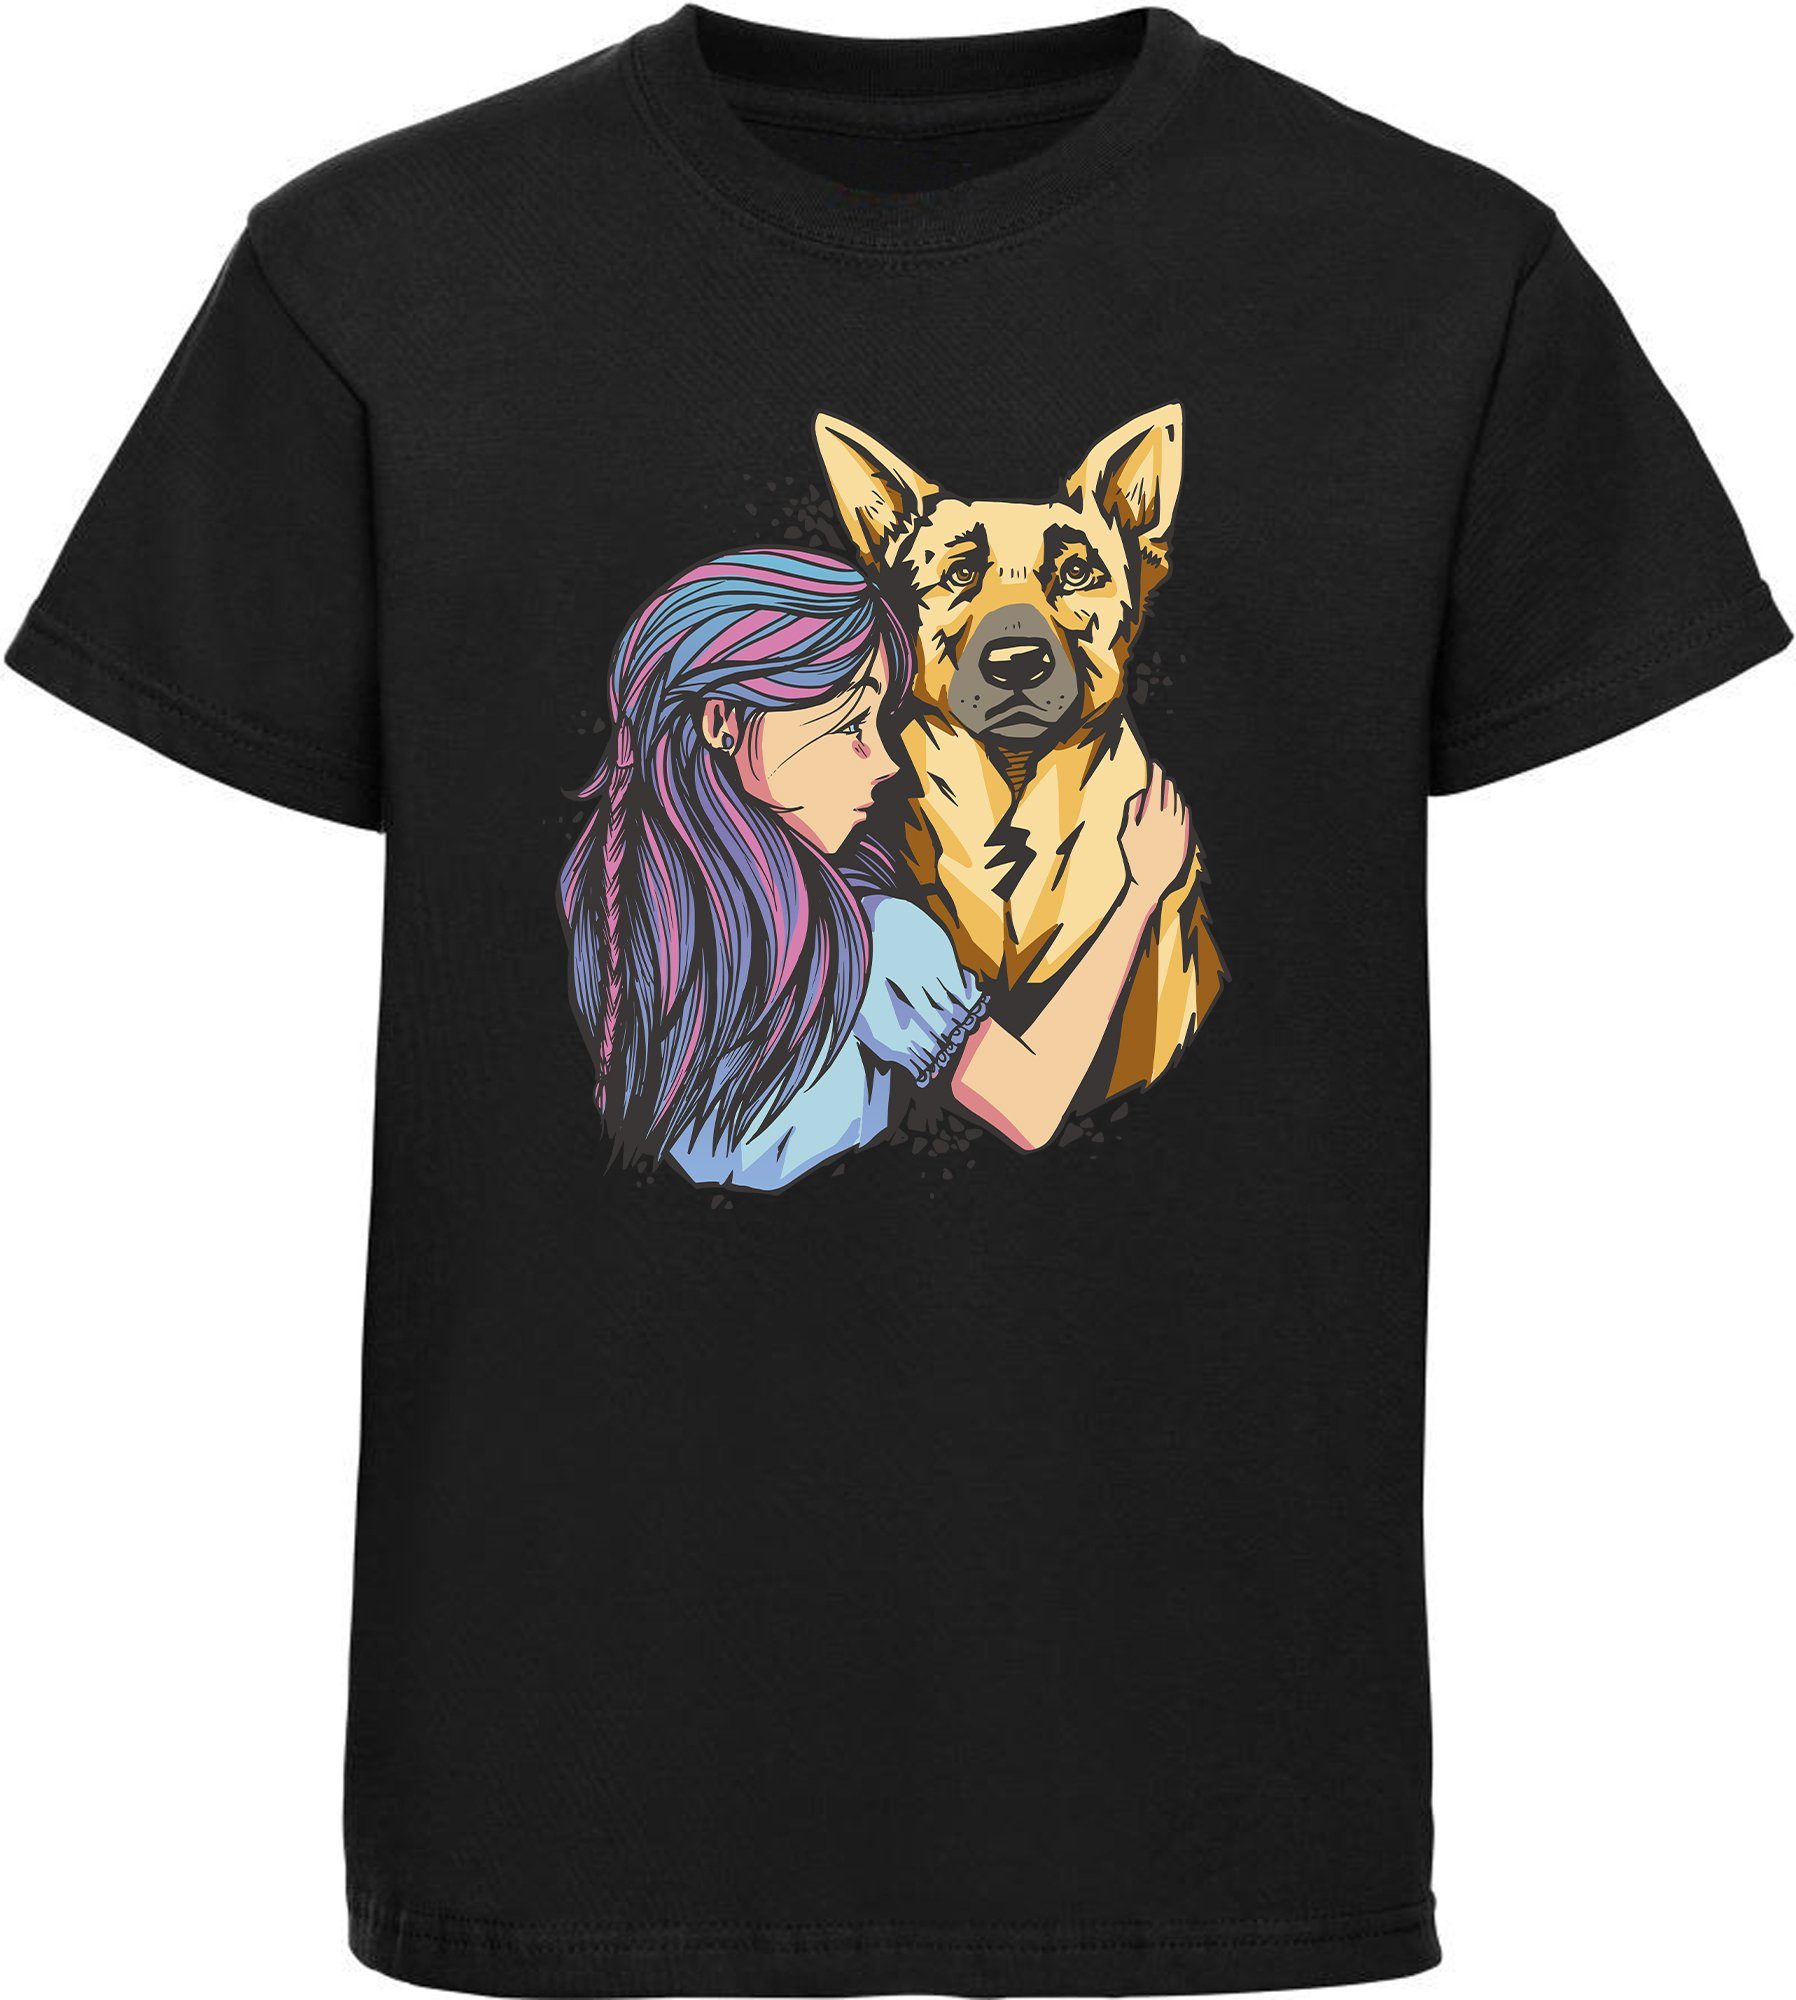 MyDesign24 T-Shirt Kinder Hunde Print Shirt bedruckt - Schäferhund mit Mädchen Baumwollshirt mit Aufdruck, i258 schwarz